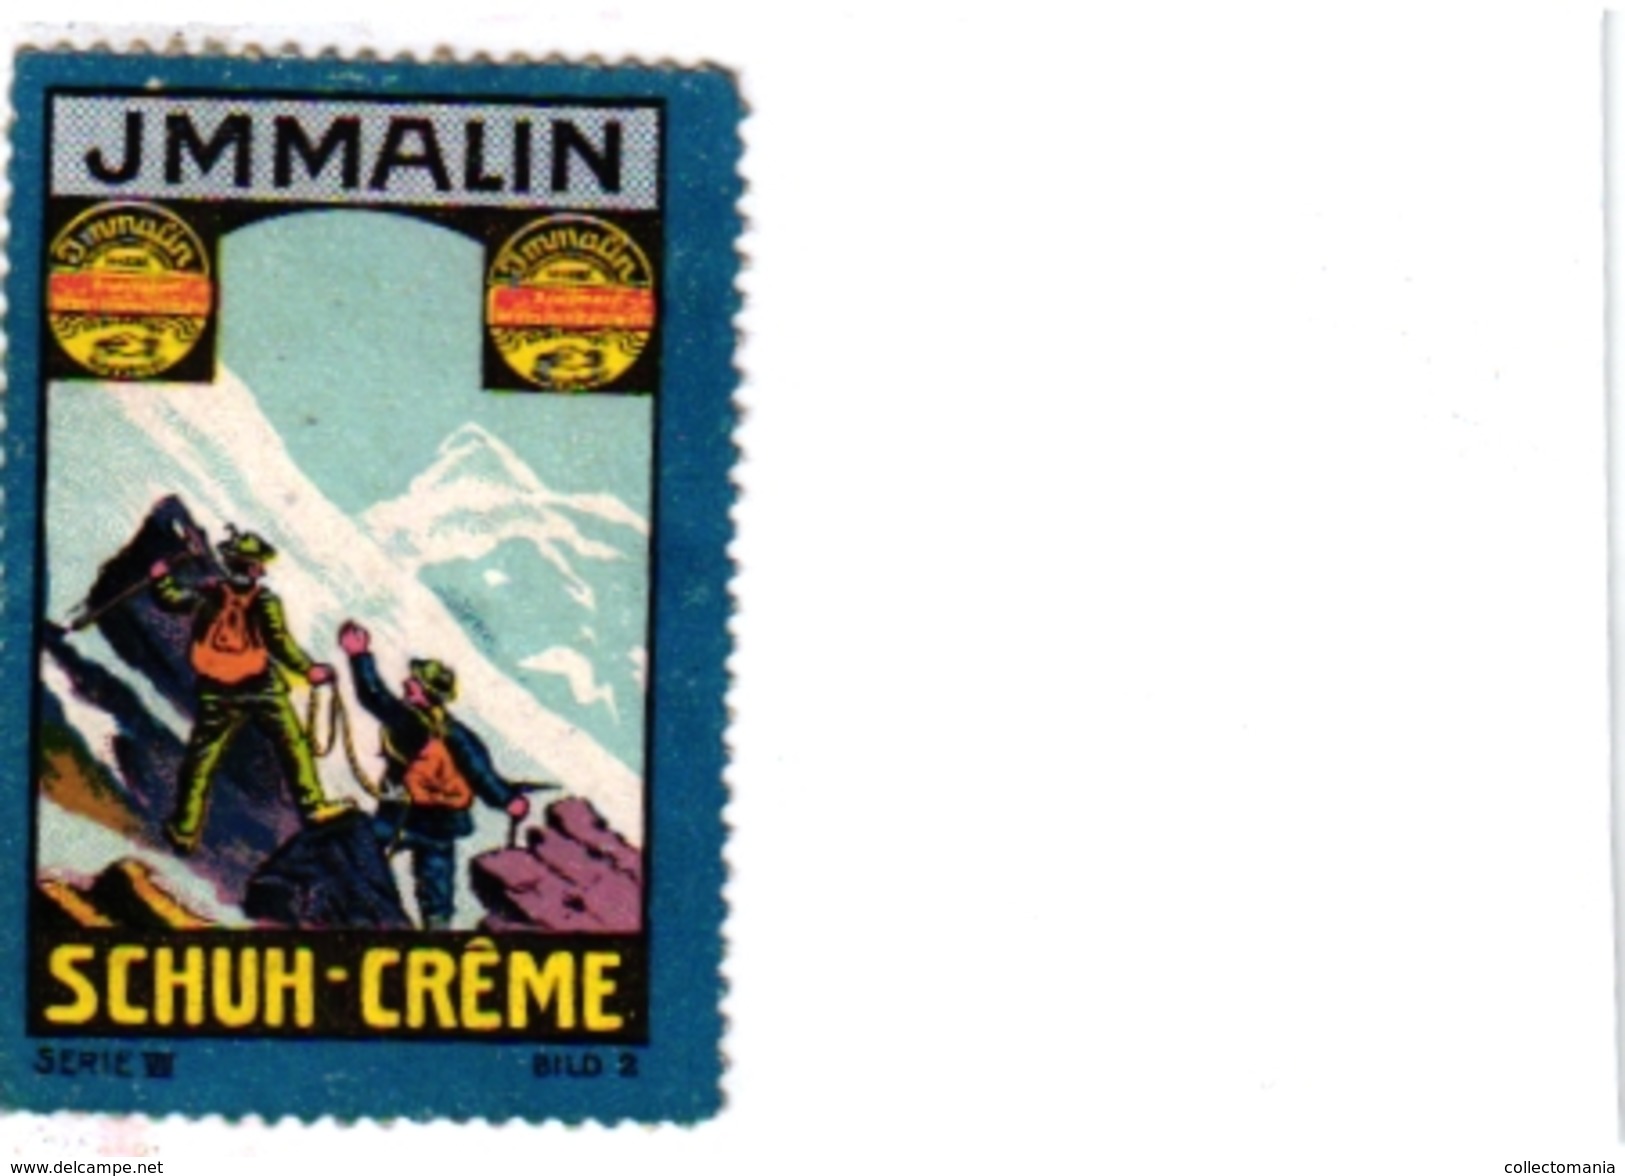 8 Poster Stamp Cinderella Reklame Marke Pub  ALPINISME Mountaineering Skiing Montagne =gebirgte Berg Climbing Klimmen VG - Winter Sports